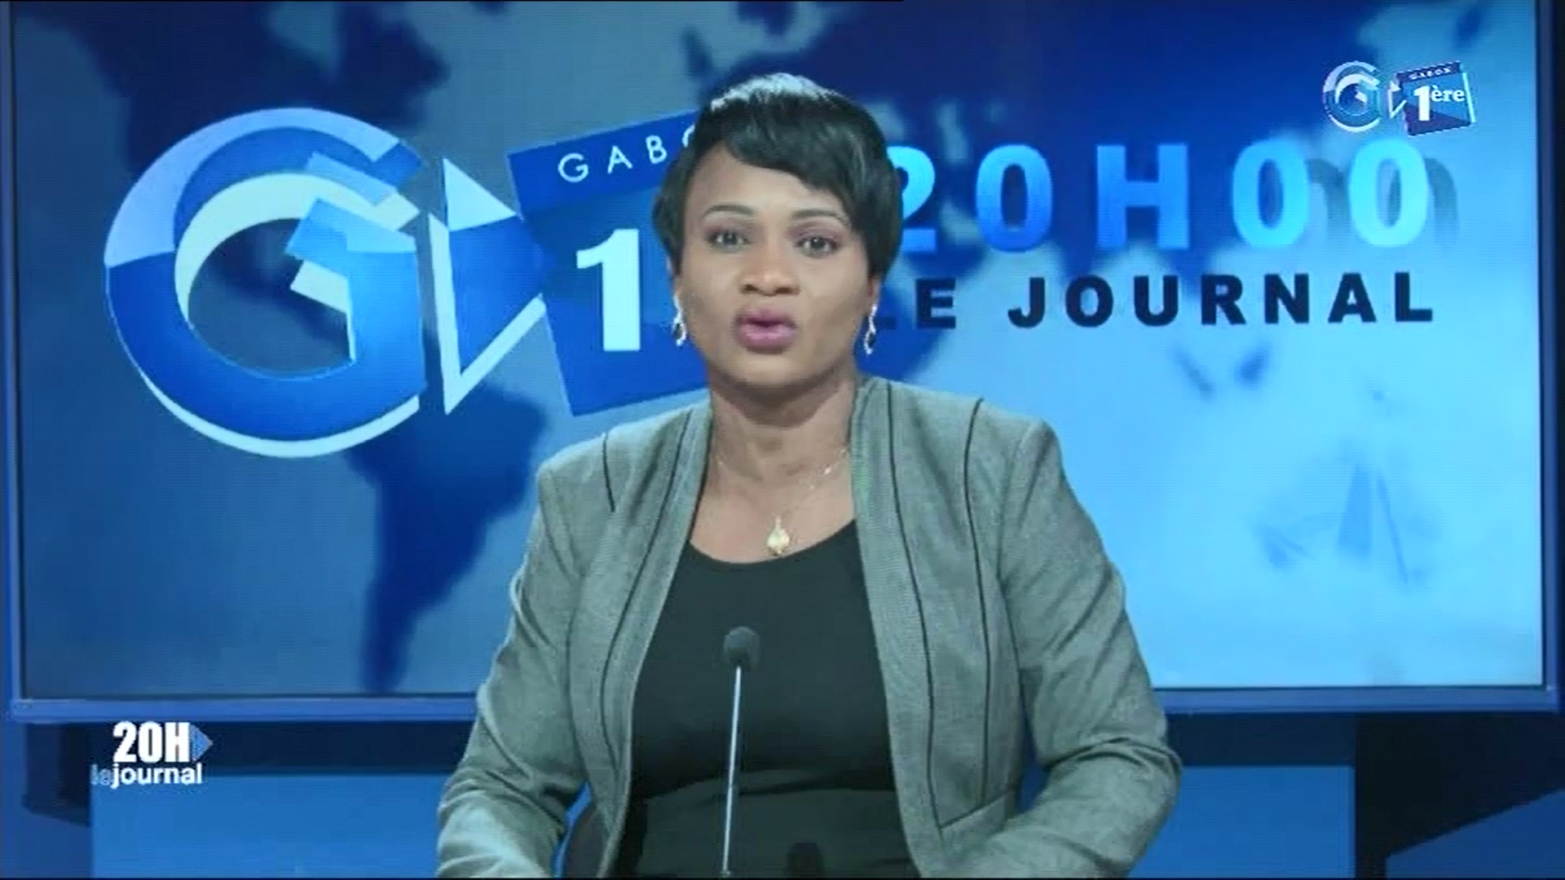 Journal télévisé de 20h de Gabon 1ère du 23 septembre 2019
